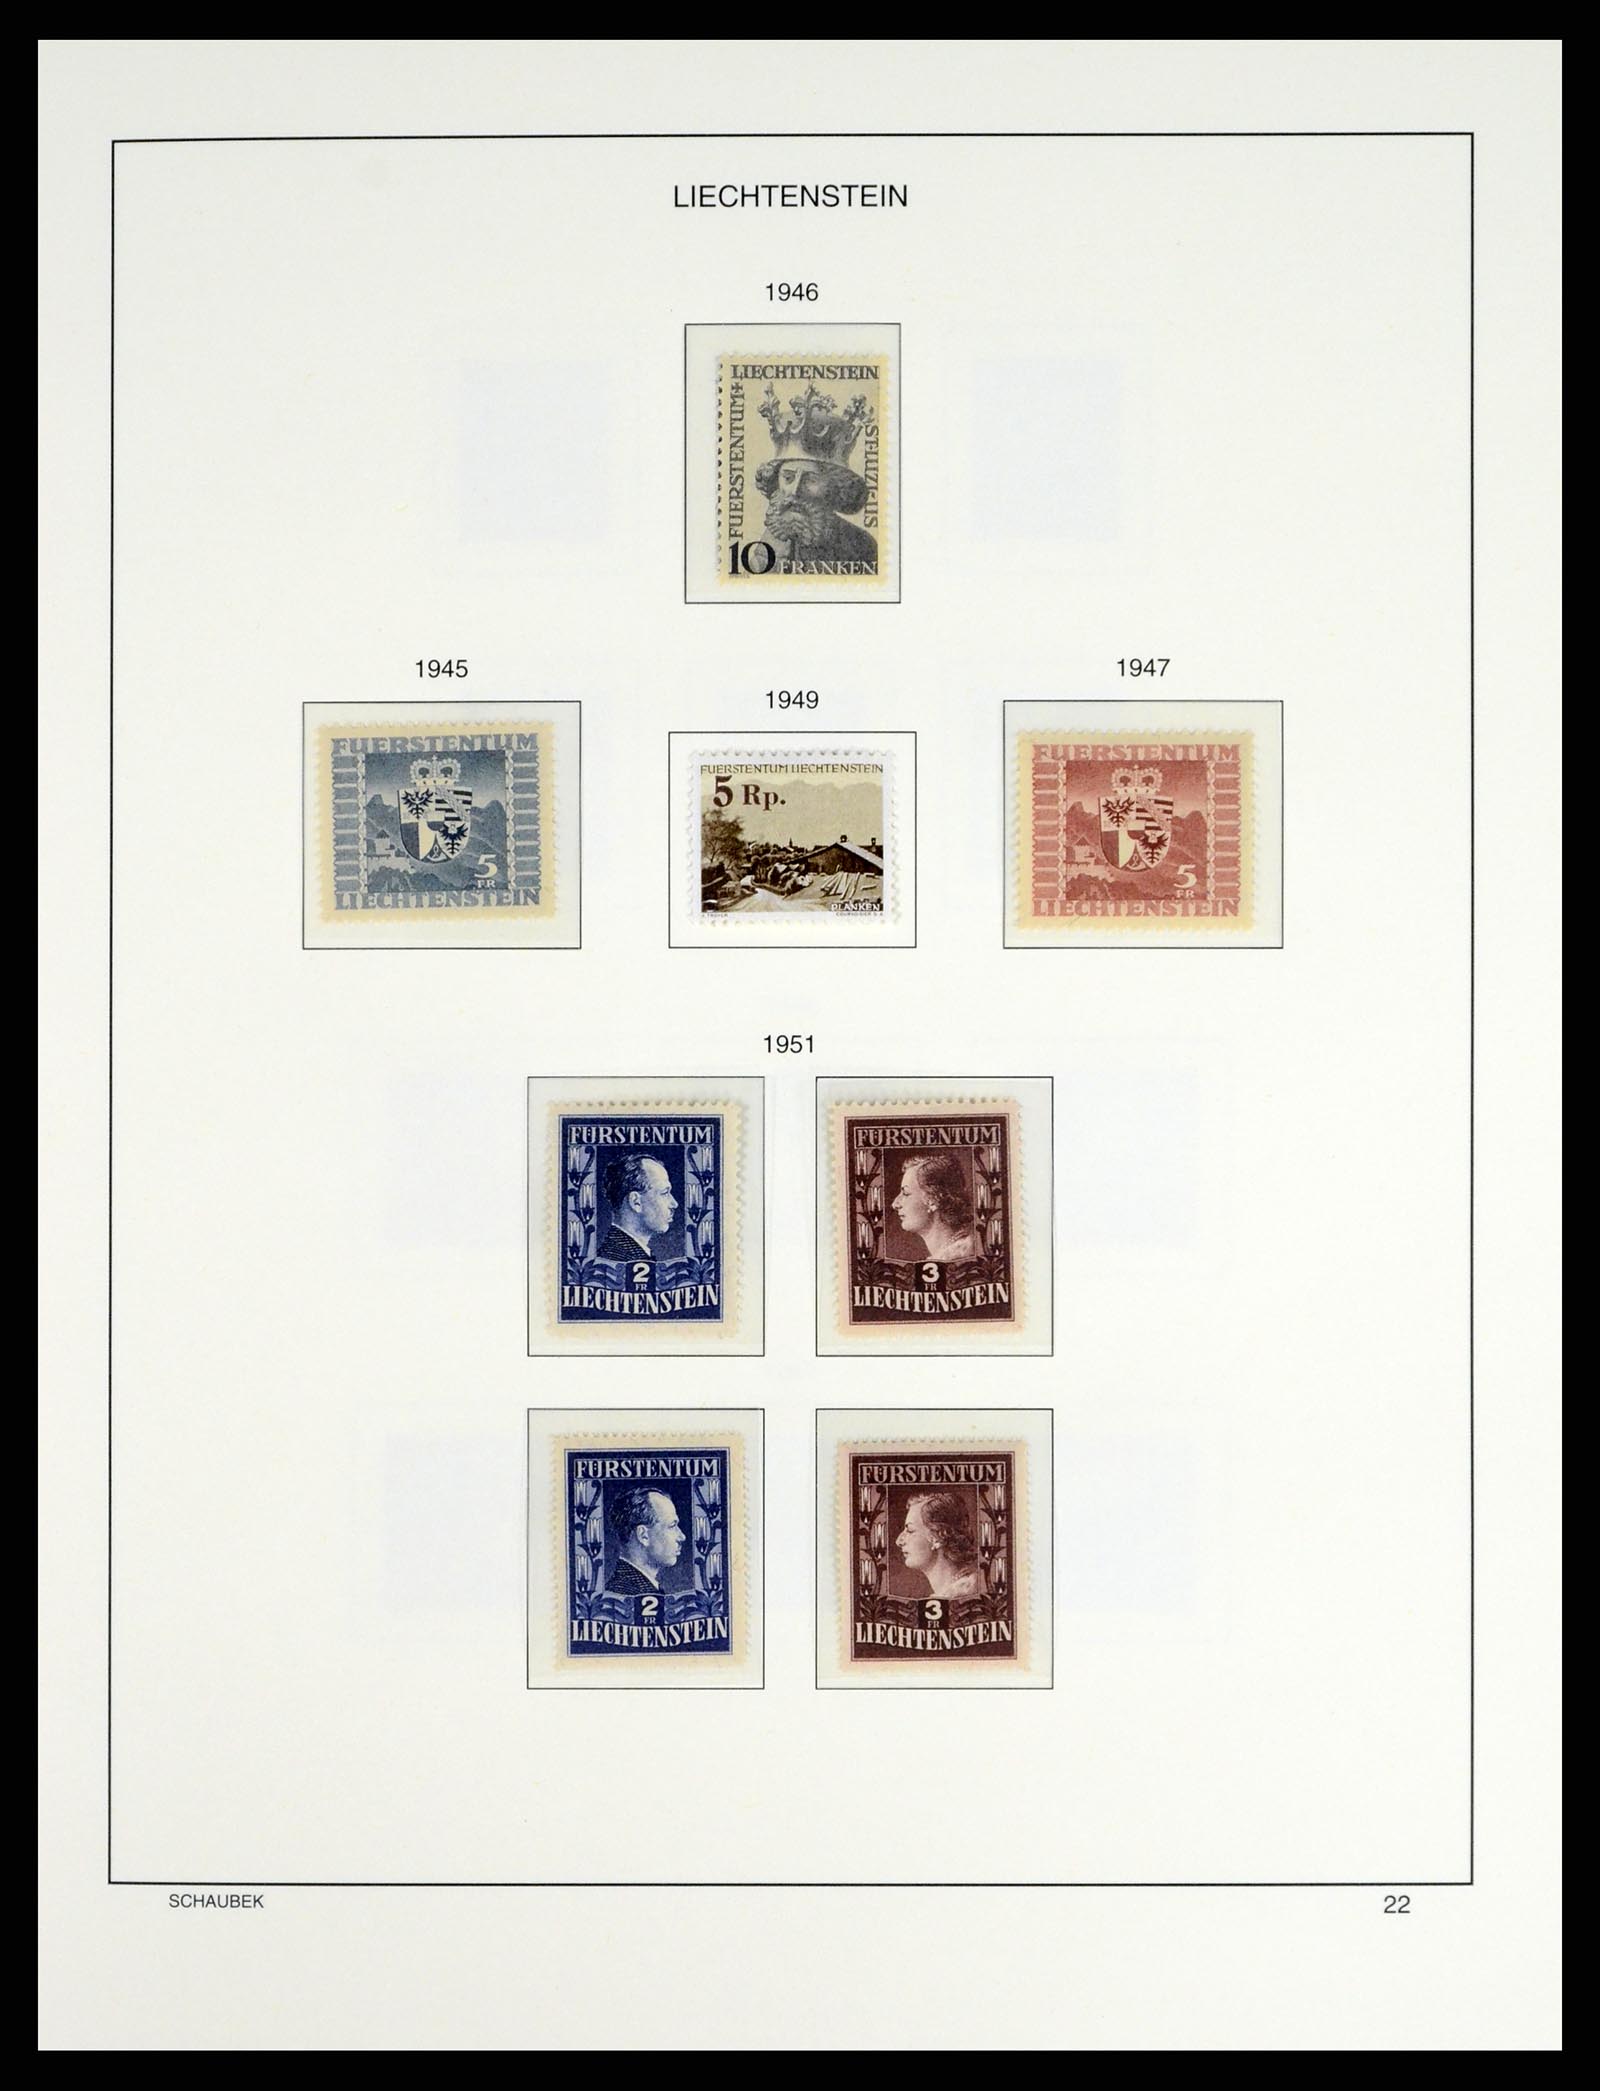 37547 025 - Stamp collection 37547 Liechtenstein 1912-2011.